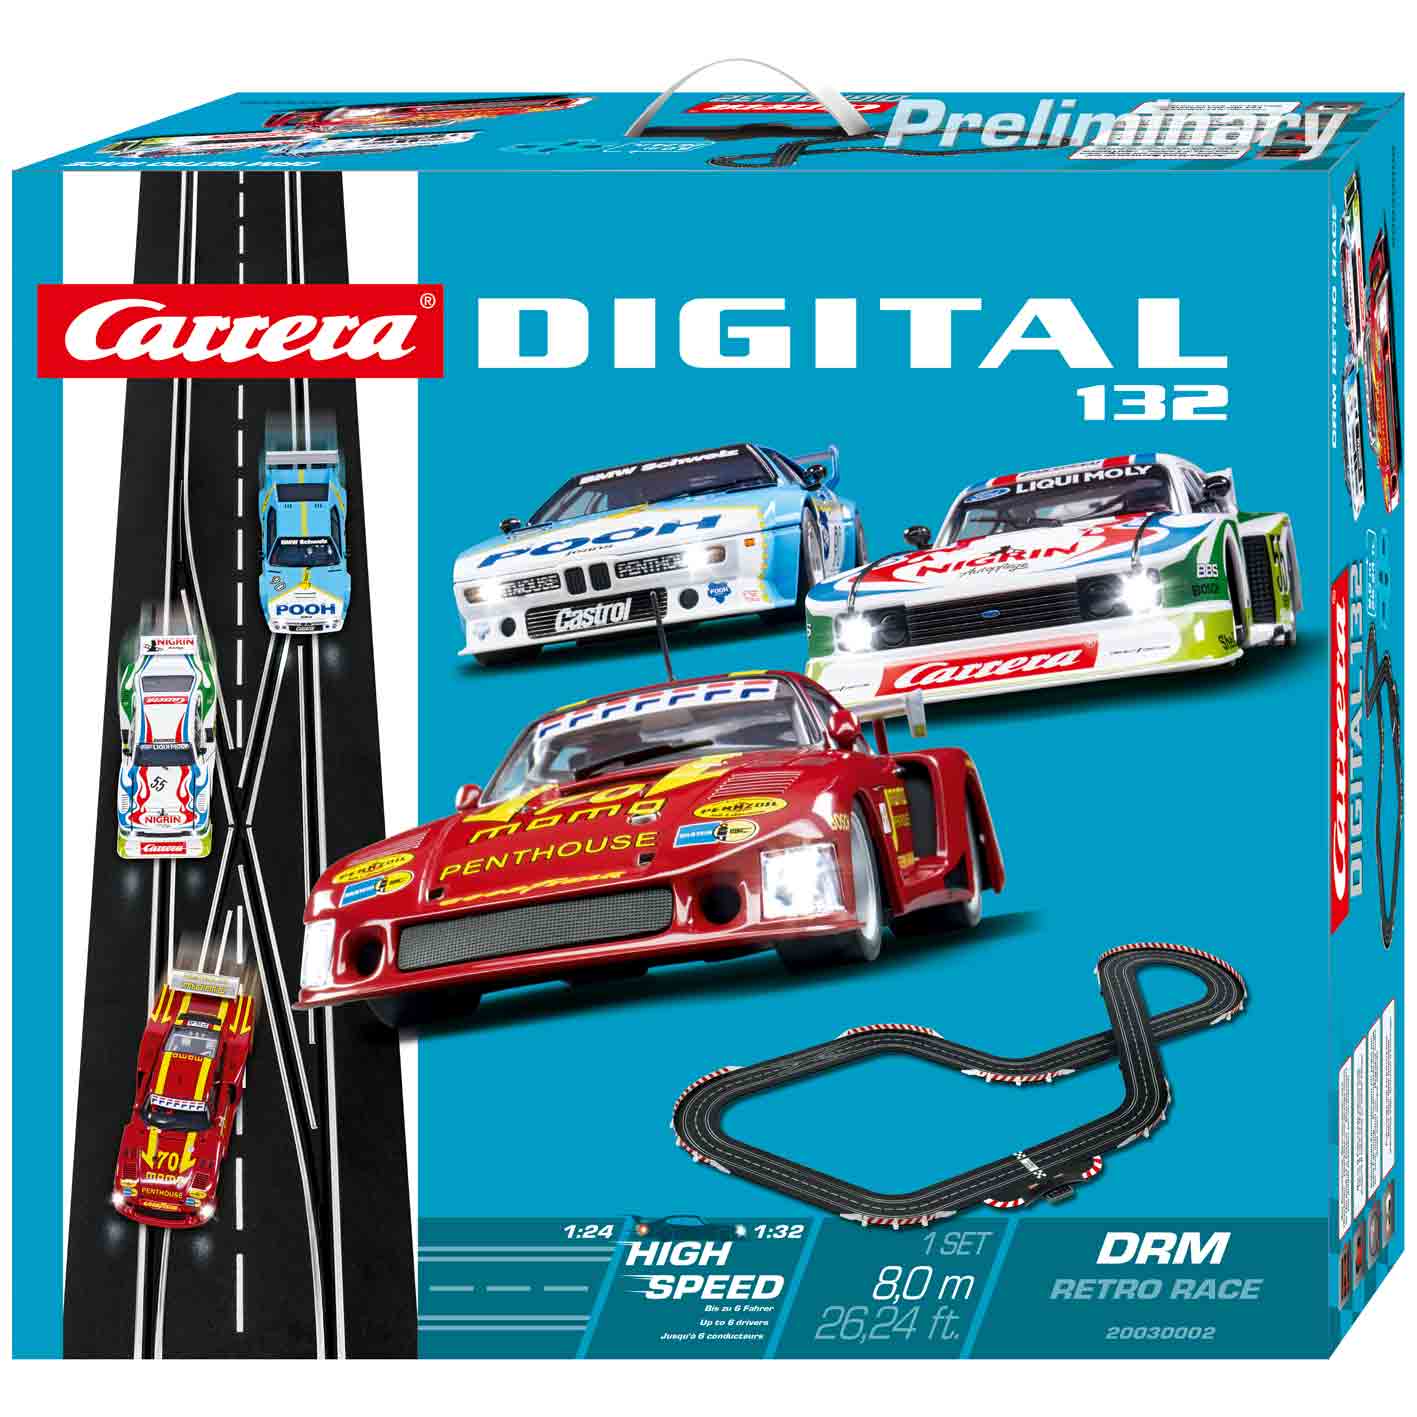 Carrera DIGITAL 132_DRM Retro Race_Verpackung